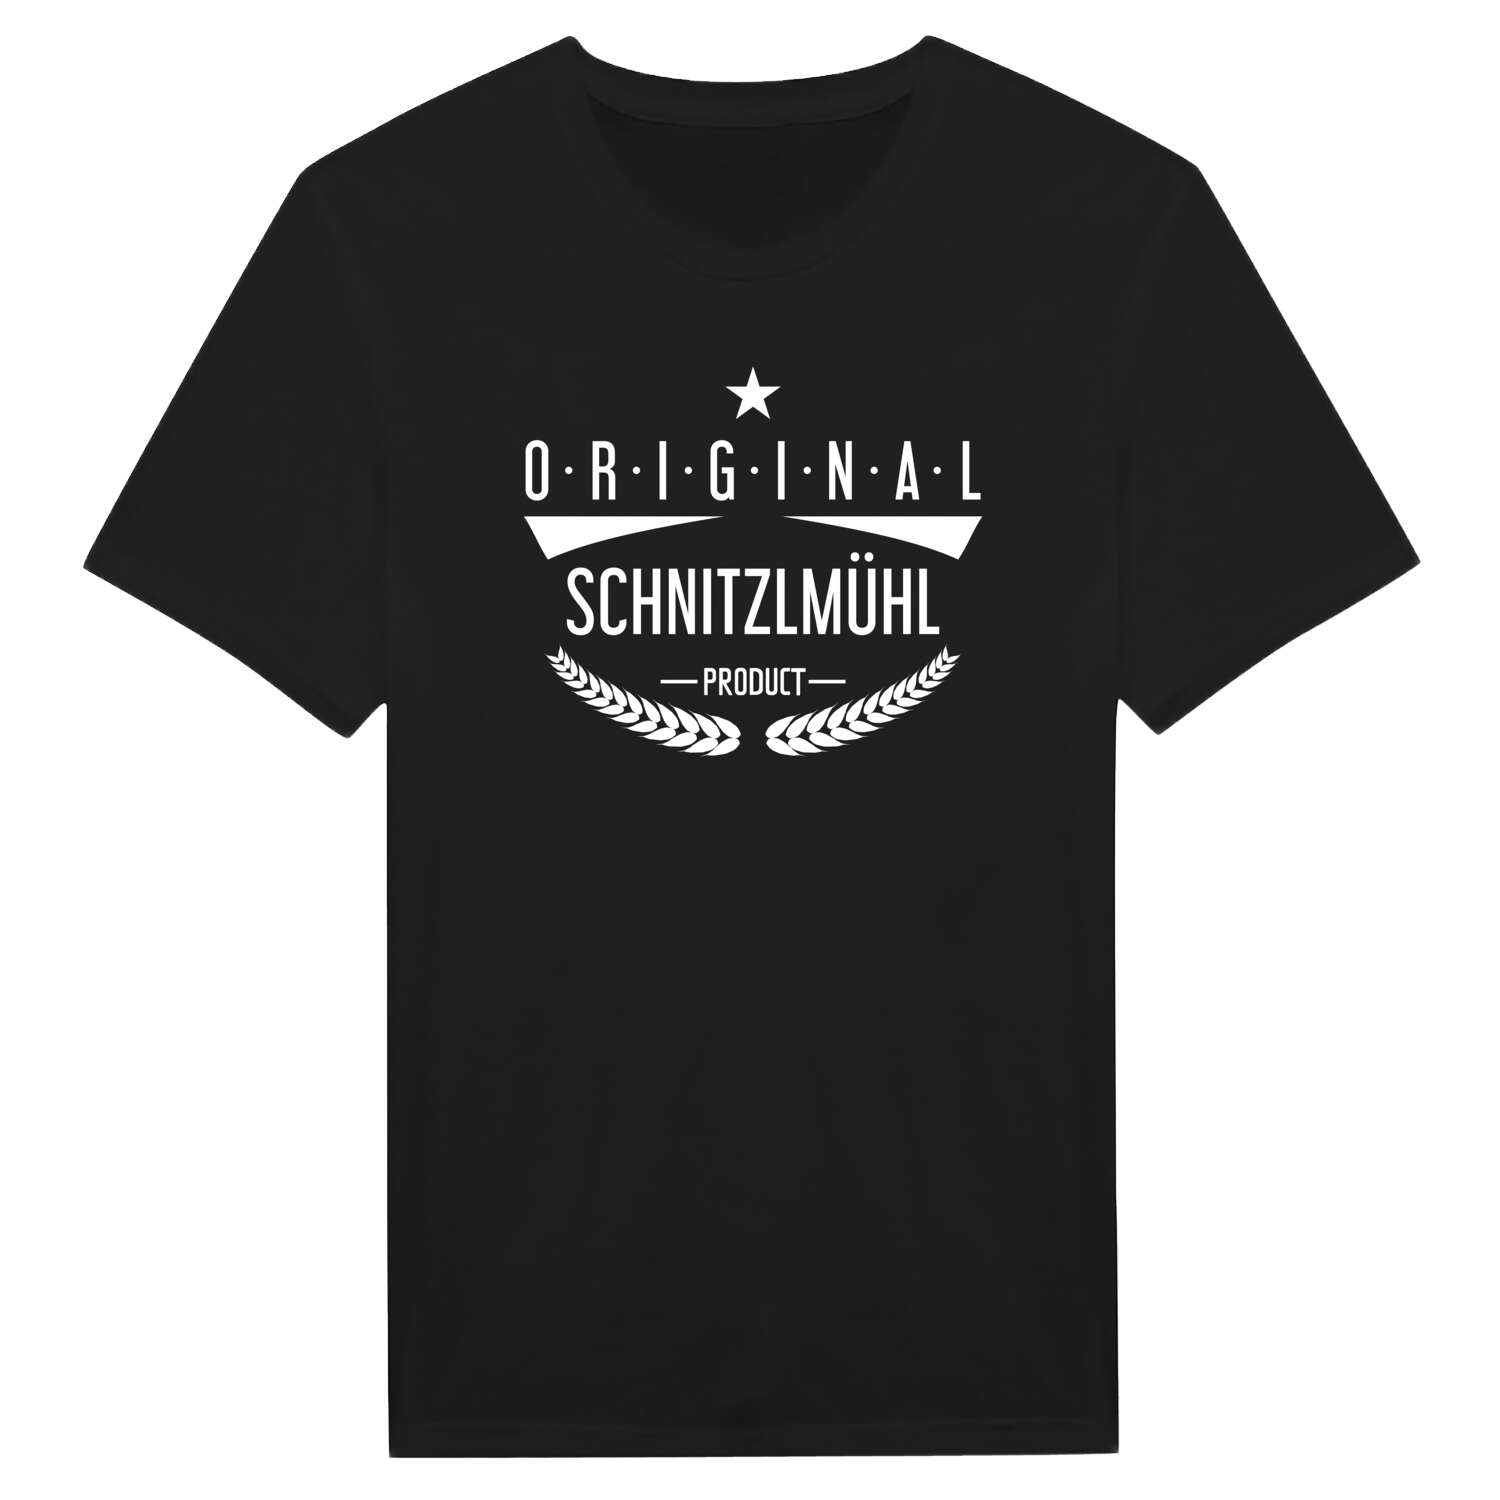 Schnitzlmühl T-Shirt »Original Product«